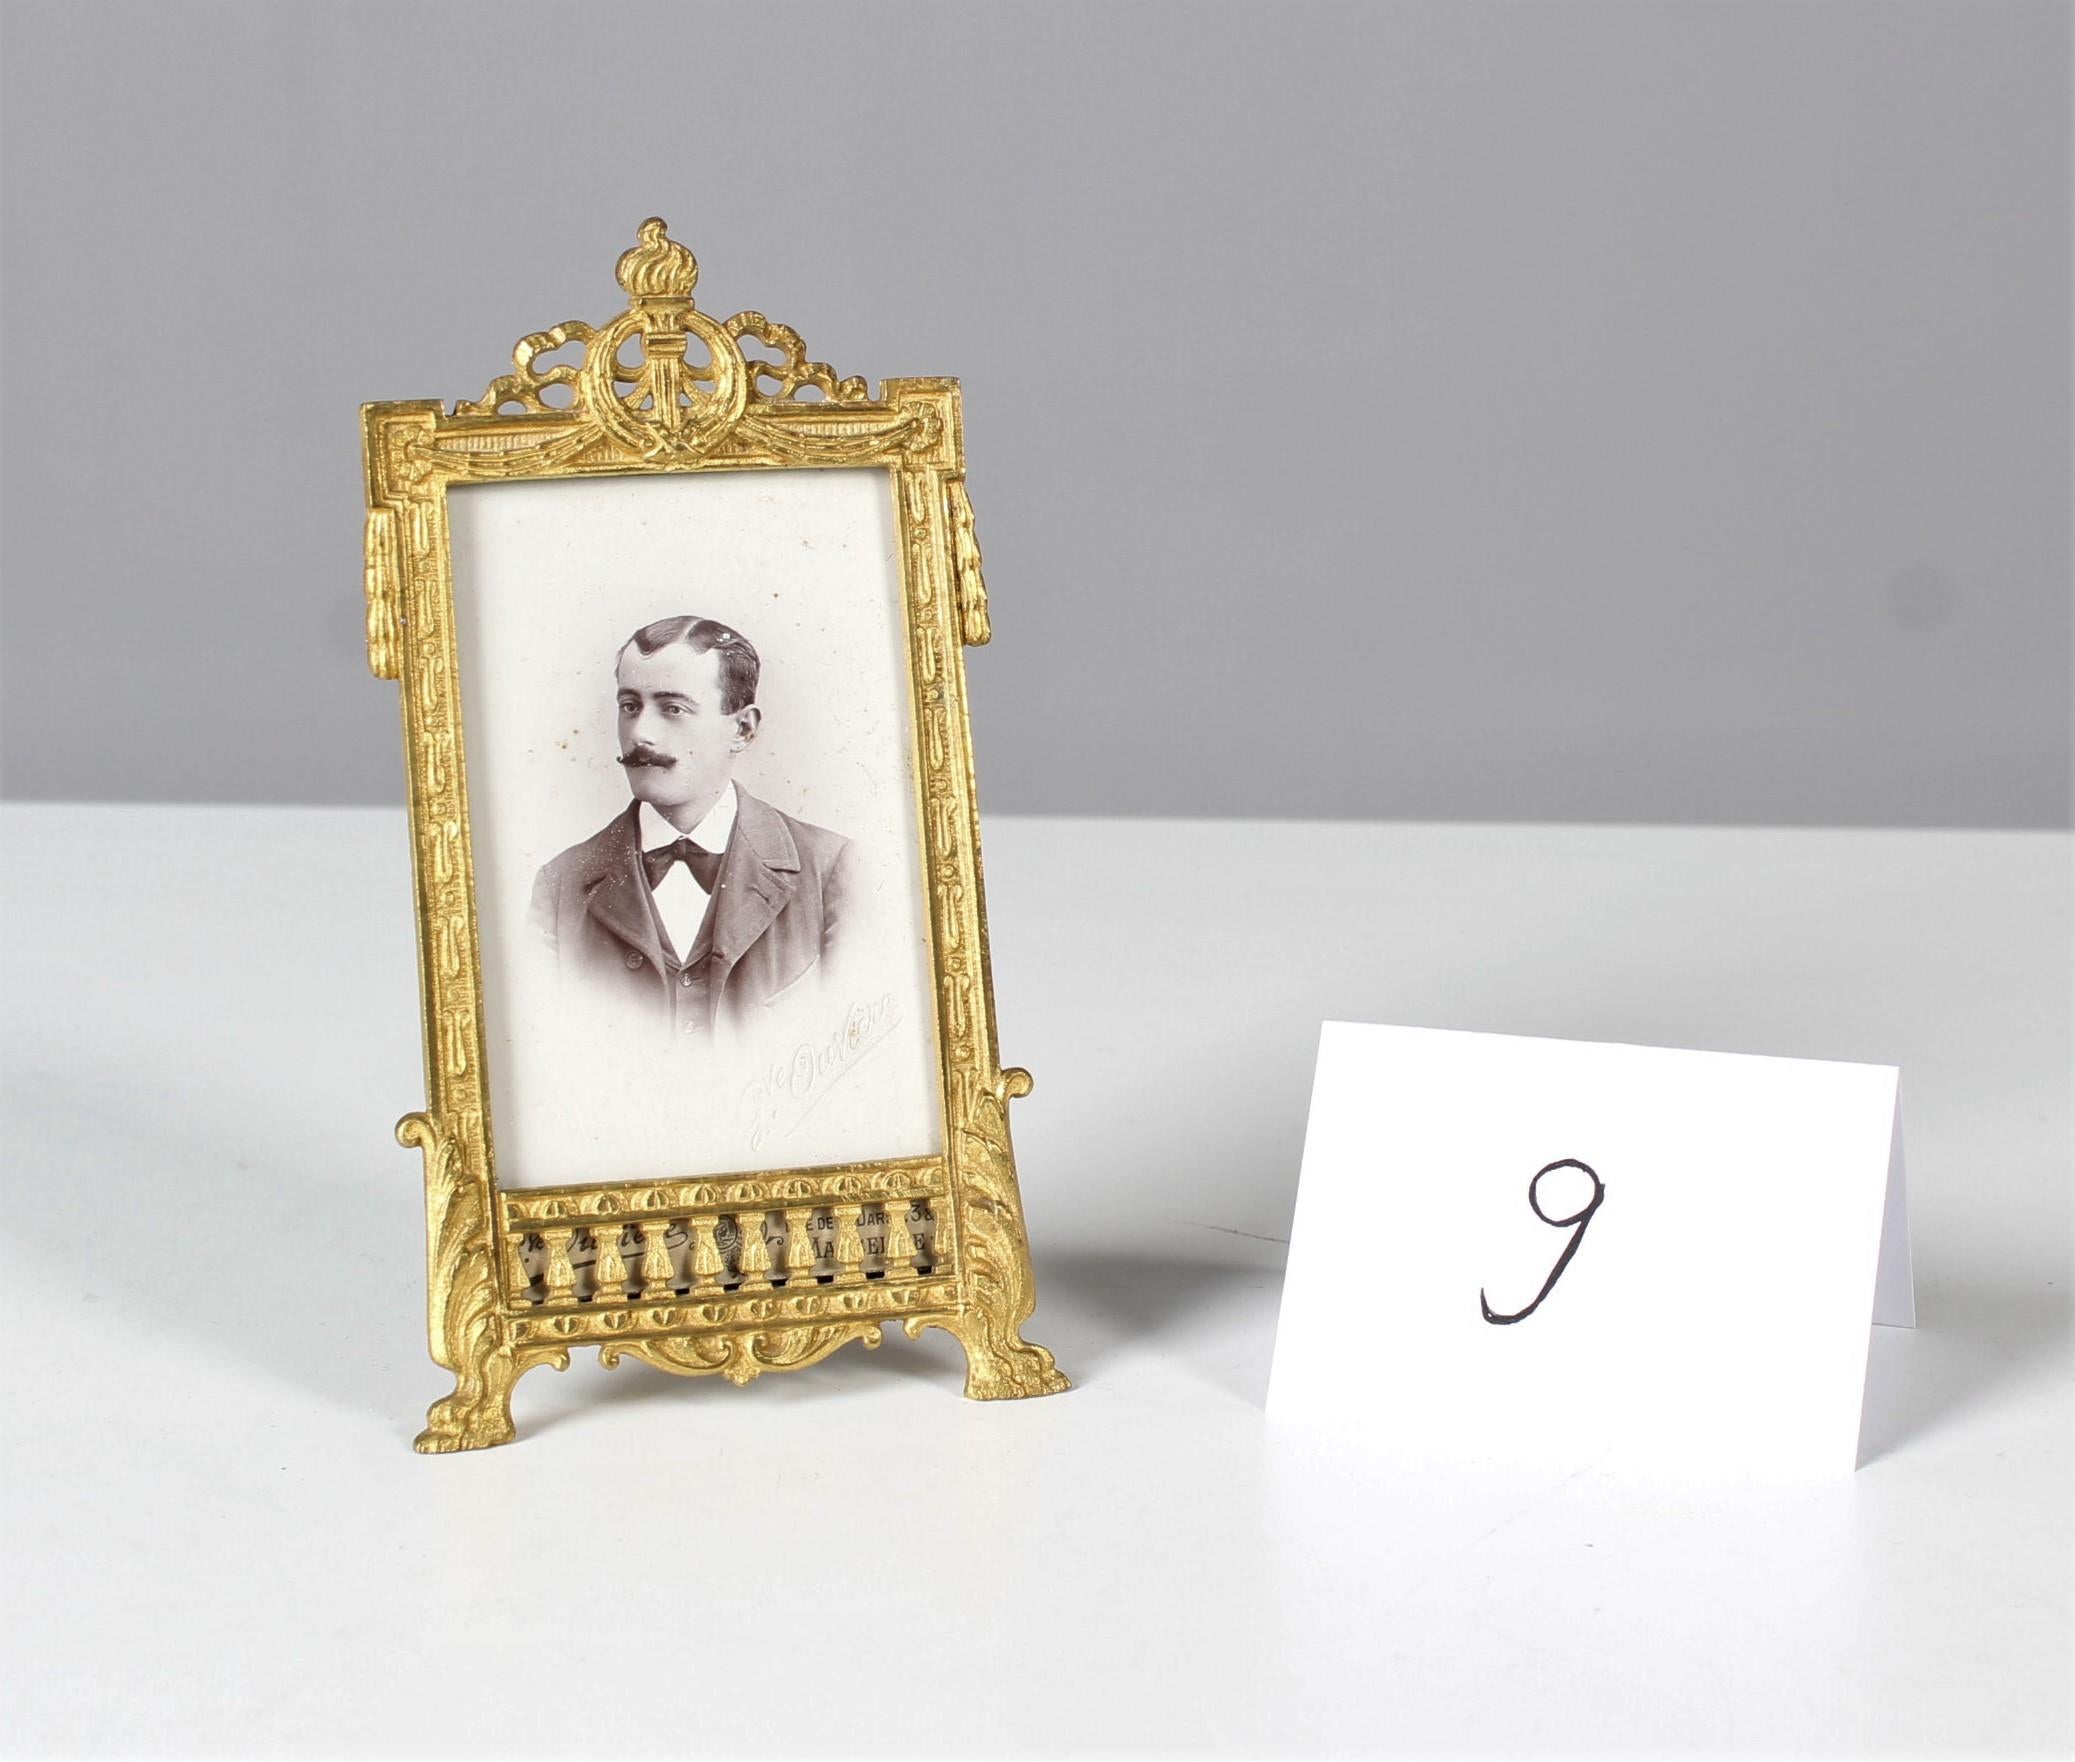 Magnifique cadre avec de riches ornements de la fin du 19e siècle avec une photo ancienne d'un jeune homme.
L'origine de cette pièce exceptionnelle est la France.
Travail de bronze joliment ciselé et doré.
La taille de l'image est de : 5,5 x 8,5